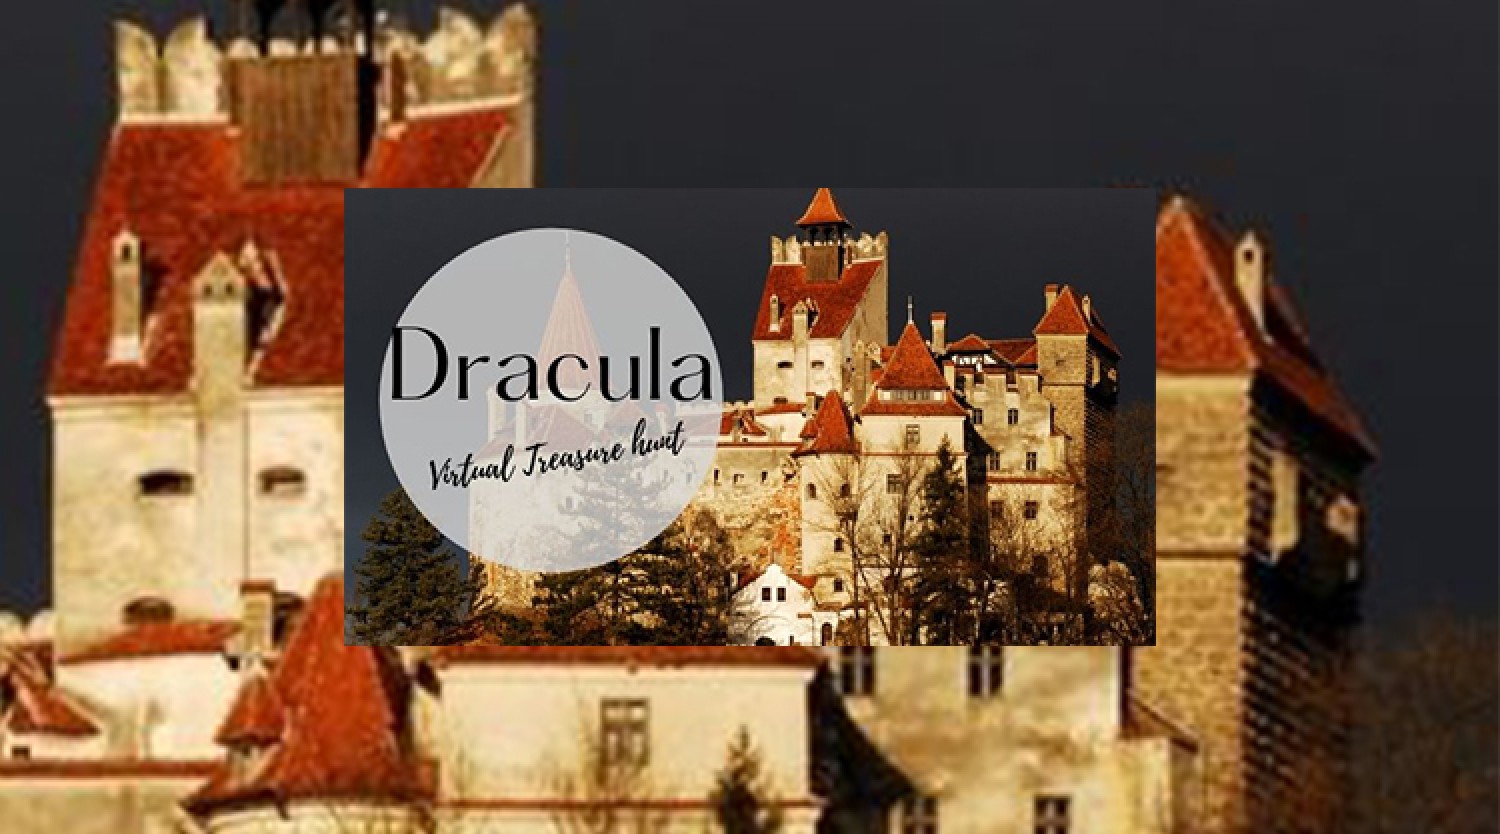 Dracula online escape room